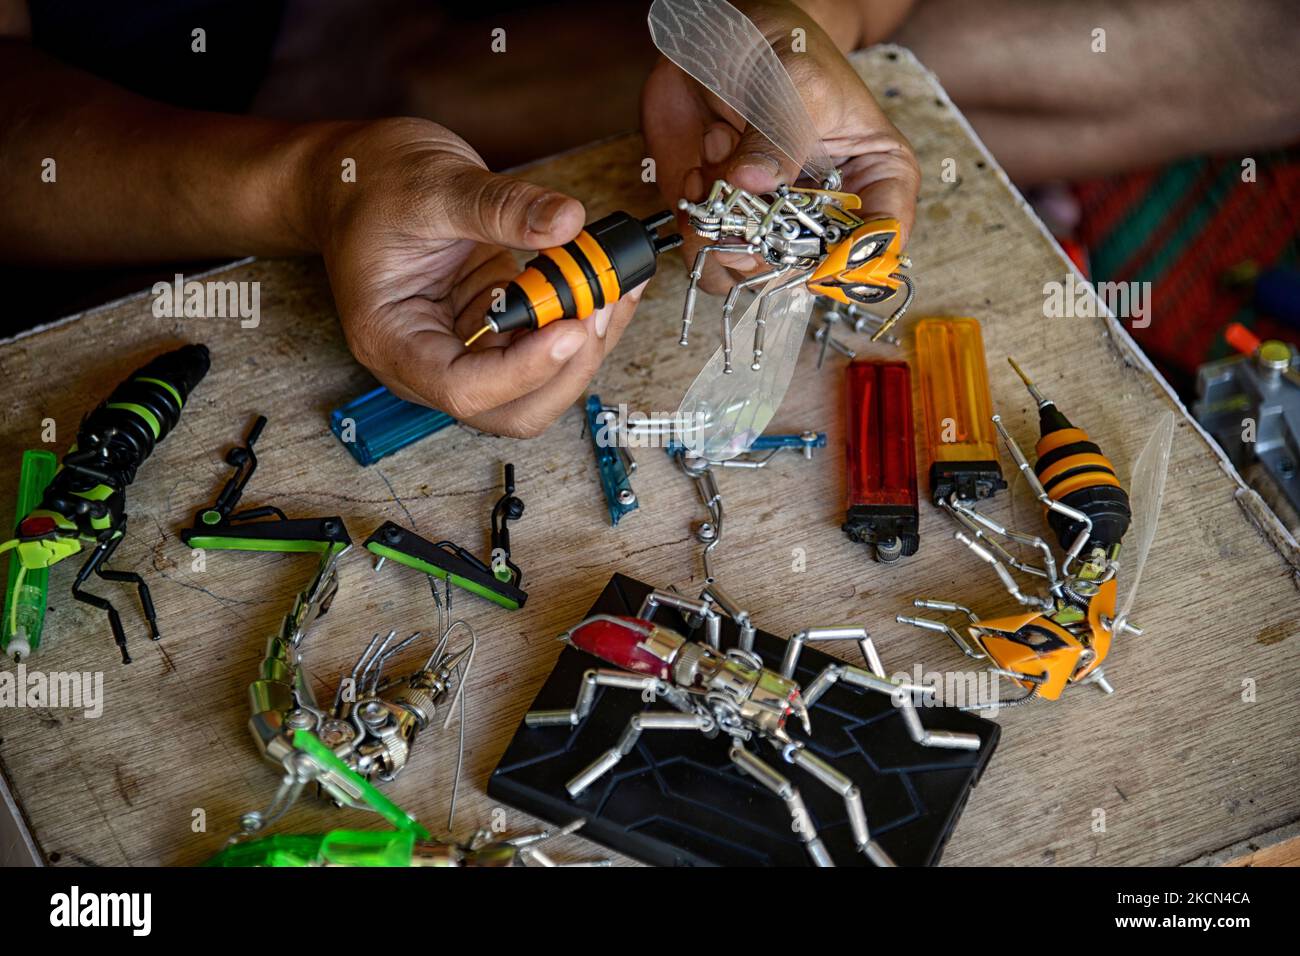 Yusuf (29) schuf am 22. September 2021 in seinem Haus in Puncak, Bogor, West-Java, Indonesien, die Bienenaktionsfiguren von Transformers. Yusuf schafft Kunst, indem er Abfallstoffe wie Gasfeuerzeuge, Ölplastikflaschen, nutzlose oder unerwünschte Produkte in künstlerische Kreationen recycelt. (Foto von Adriana Adie/NurPhoto) Stockfoto